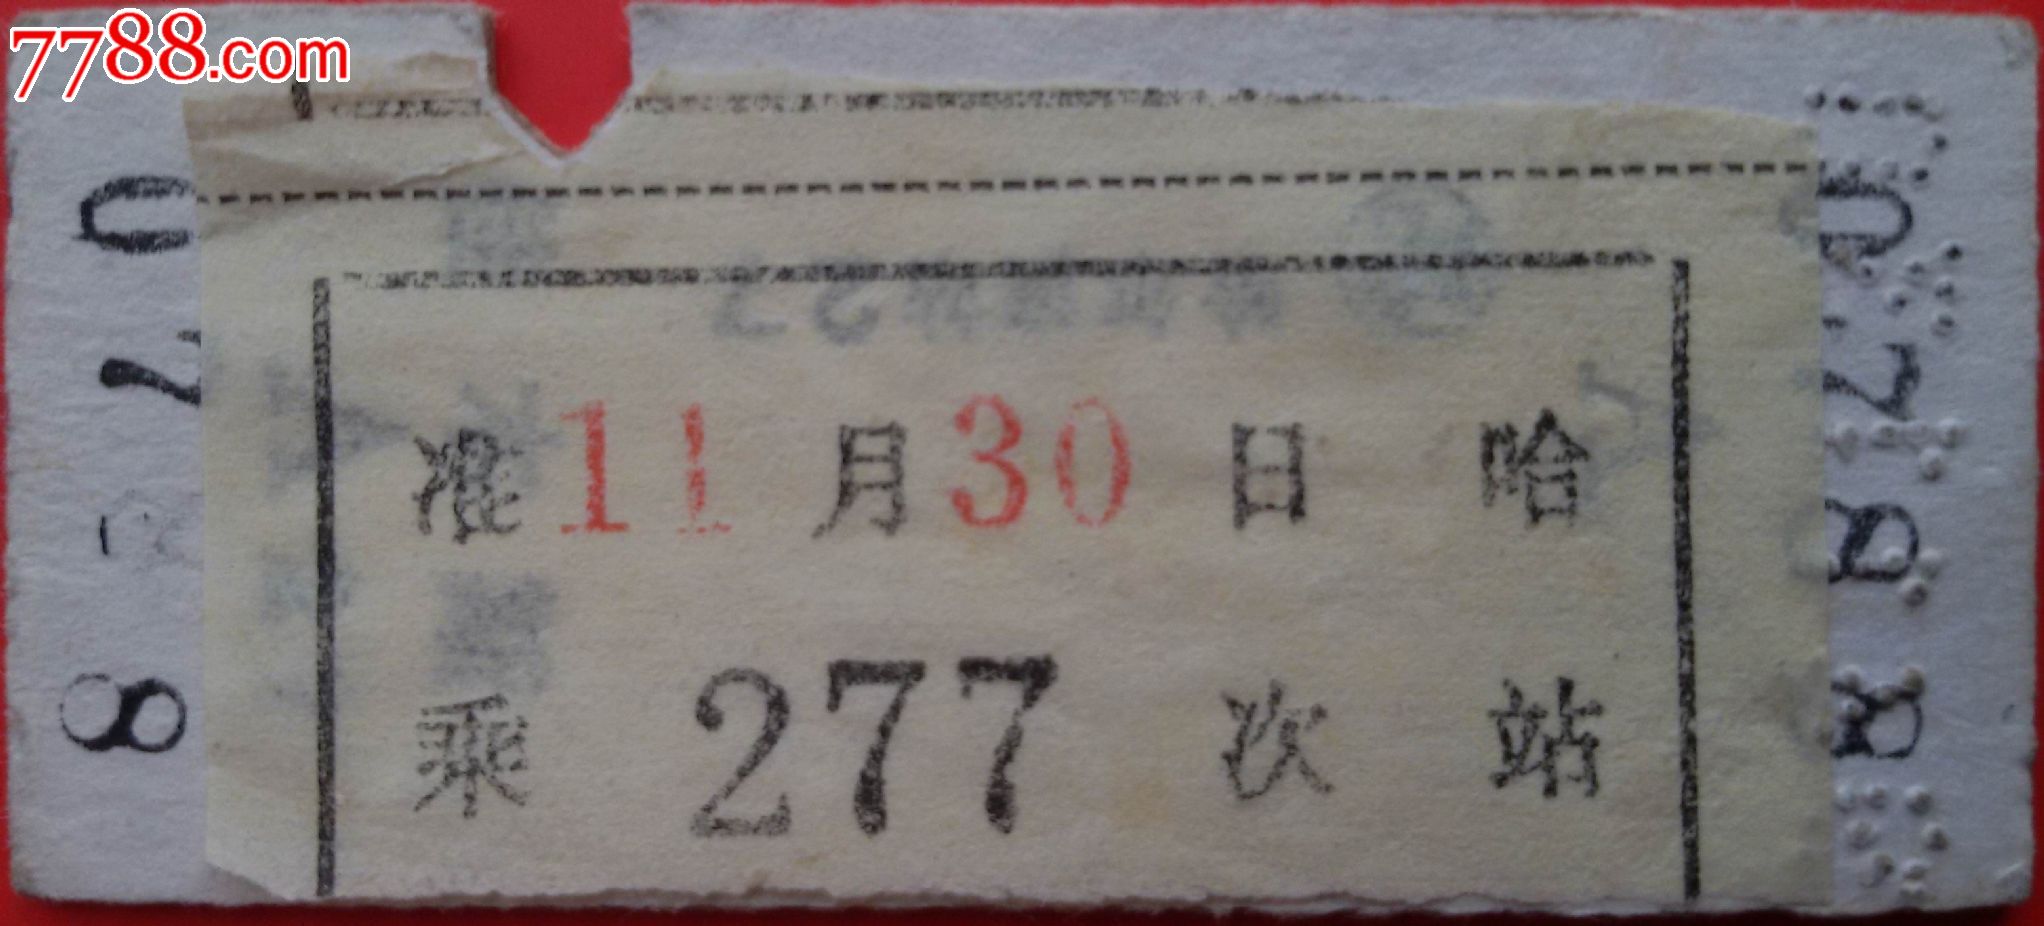 1994年11月30日哈尔滨至佳木斯火车票,火车票